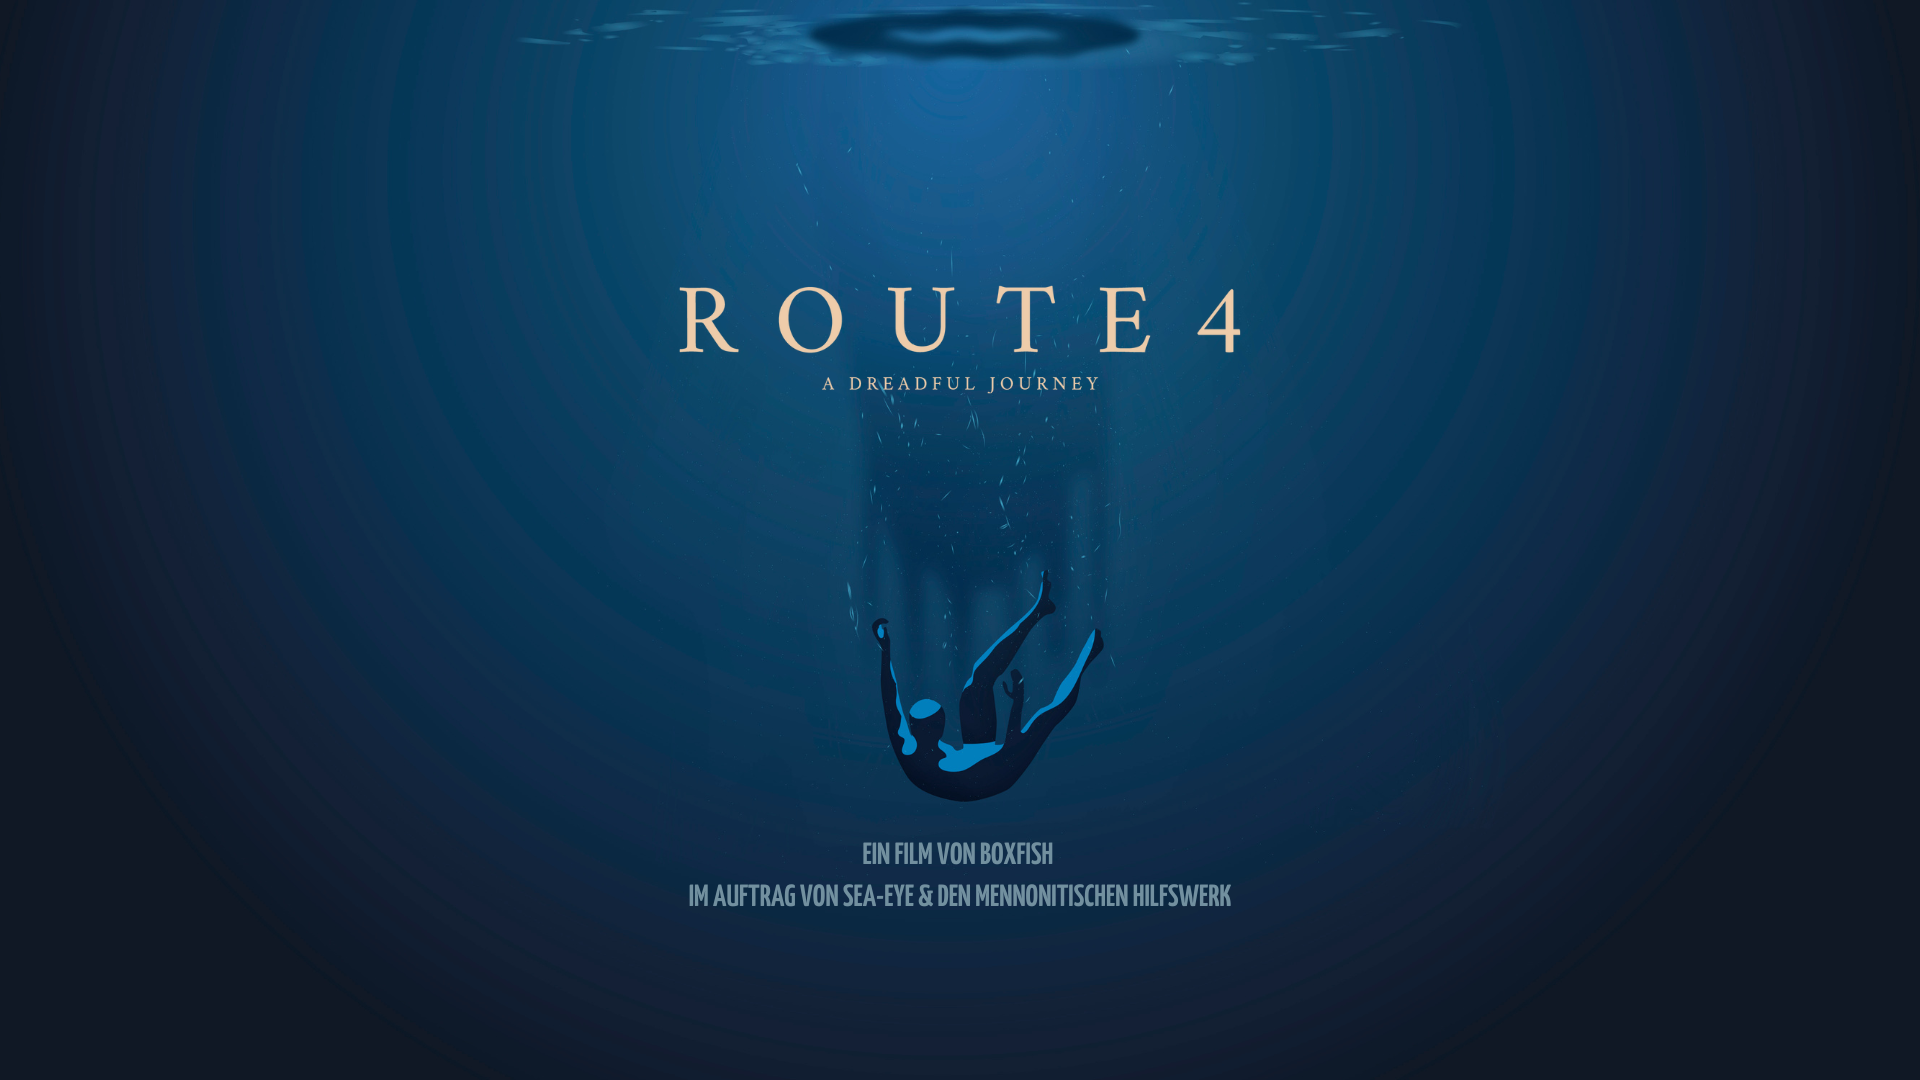 Filmvorführung: “Route 4” in der Kulturcafete